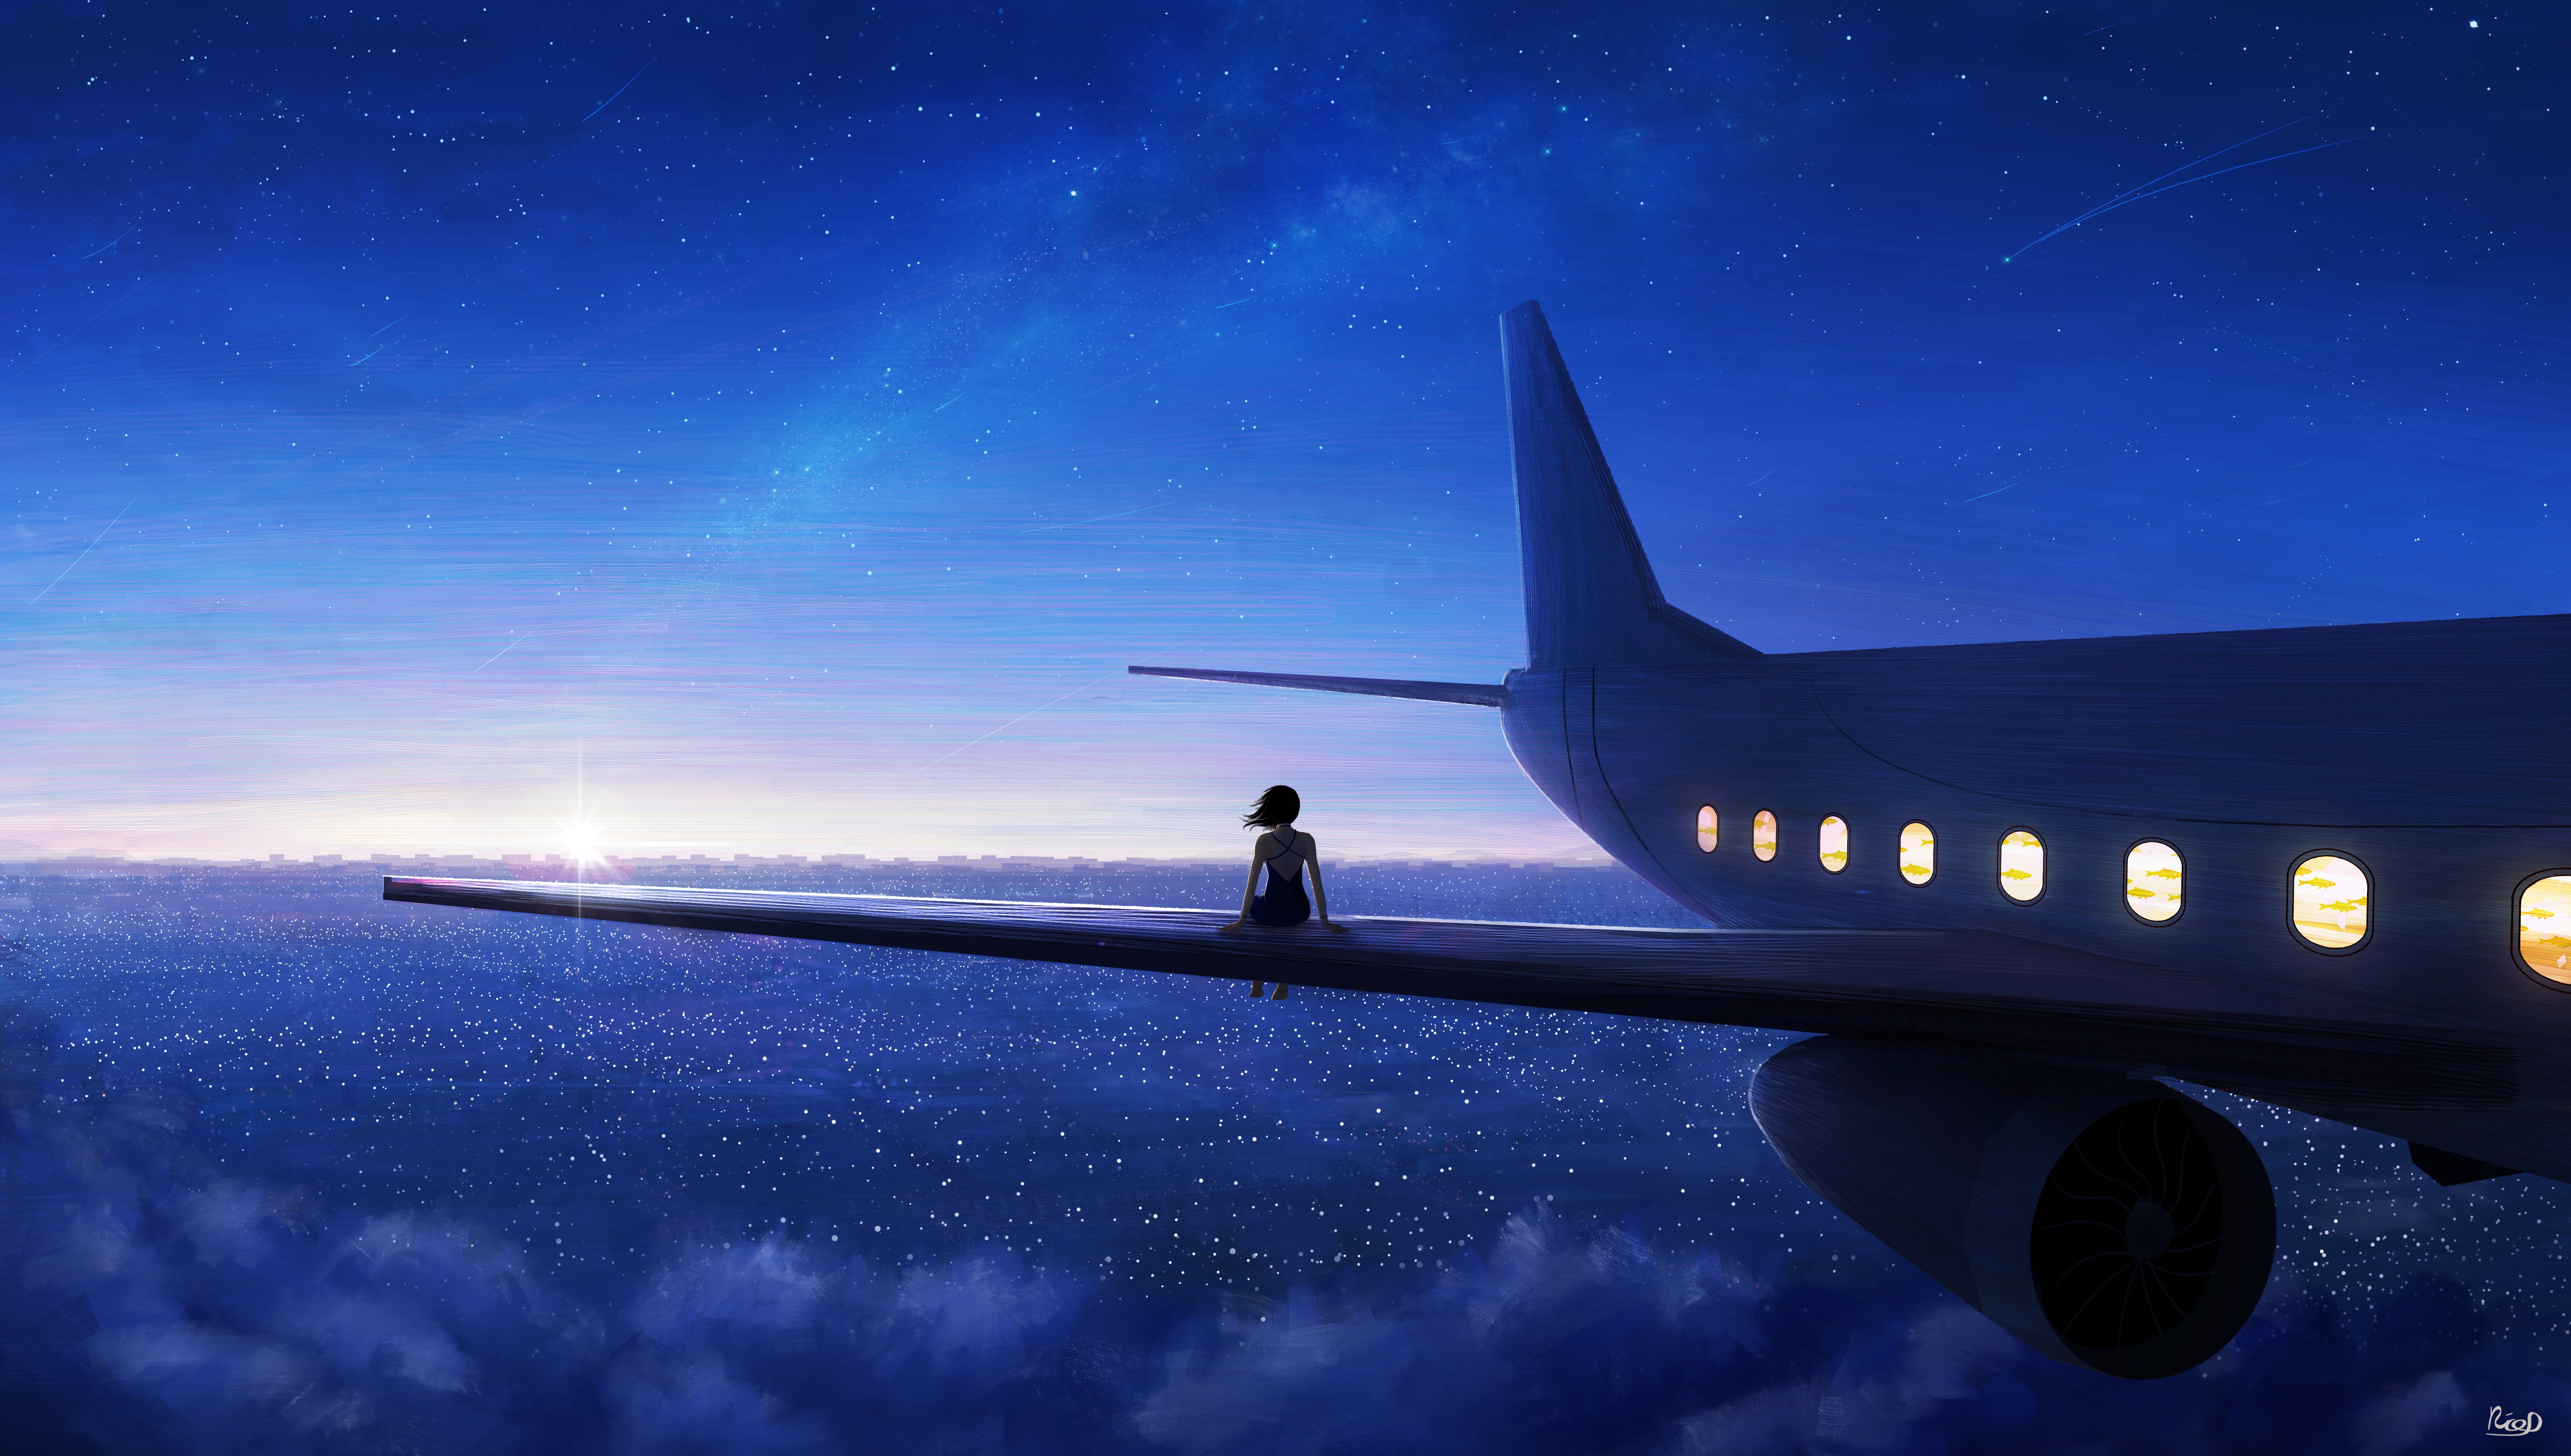 starry sky, aircraft, original, anime, shooting star, sky